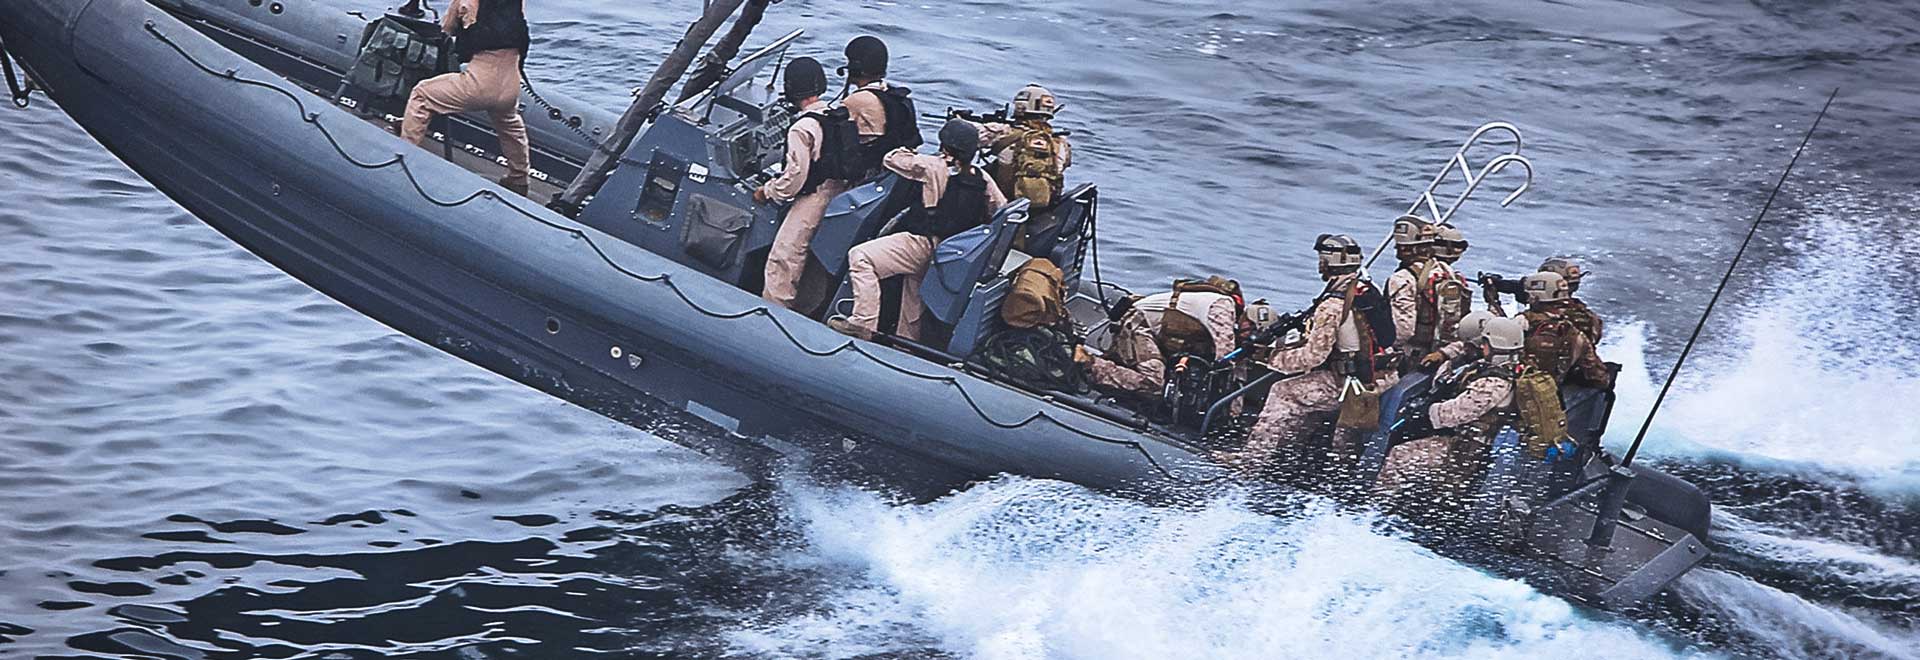 Los marineros marinos en un barco de alta velocidad se enfrentan a una misión